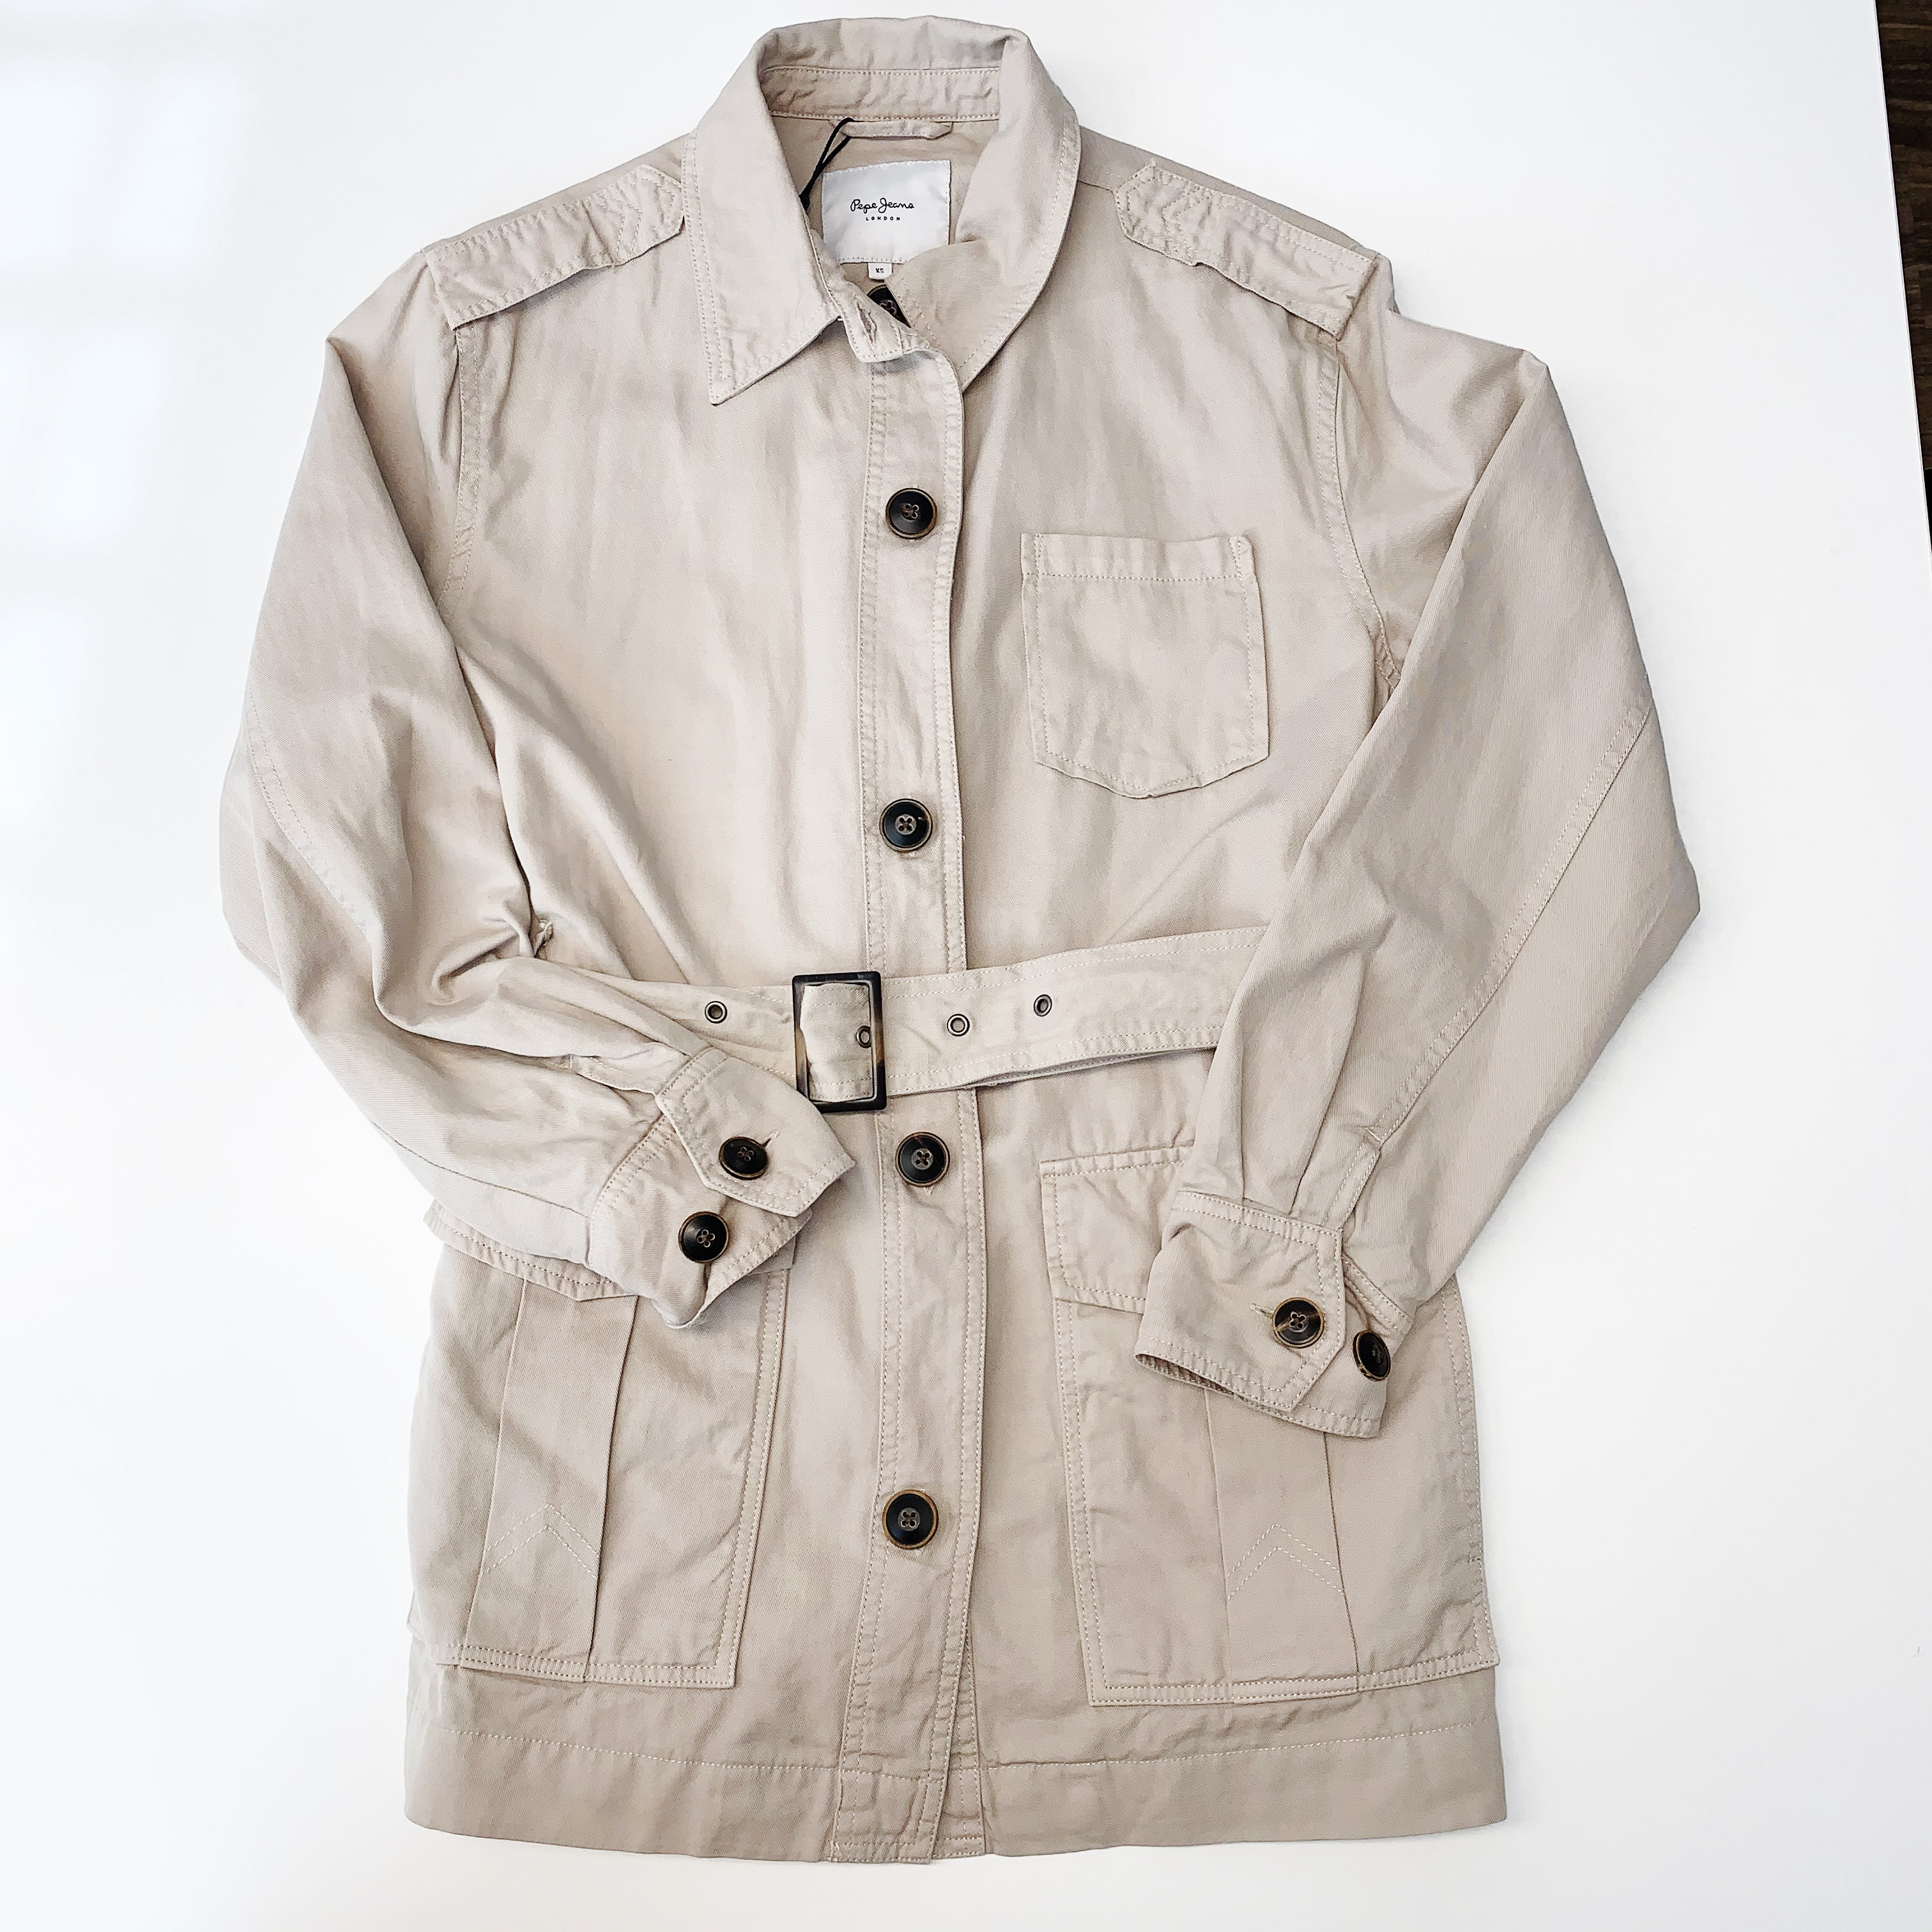 La chaqueta Sahariana: un clásico que no puede faltar en el